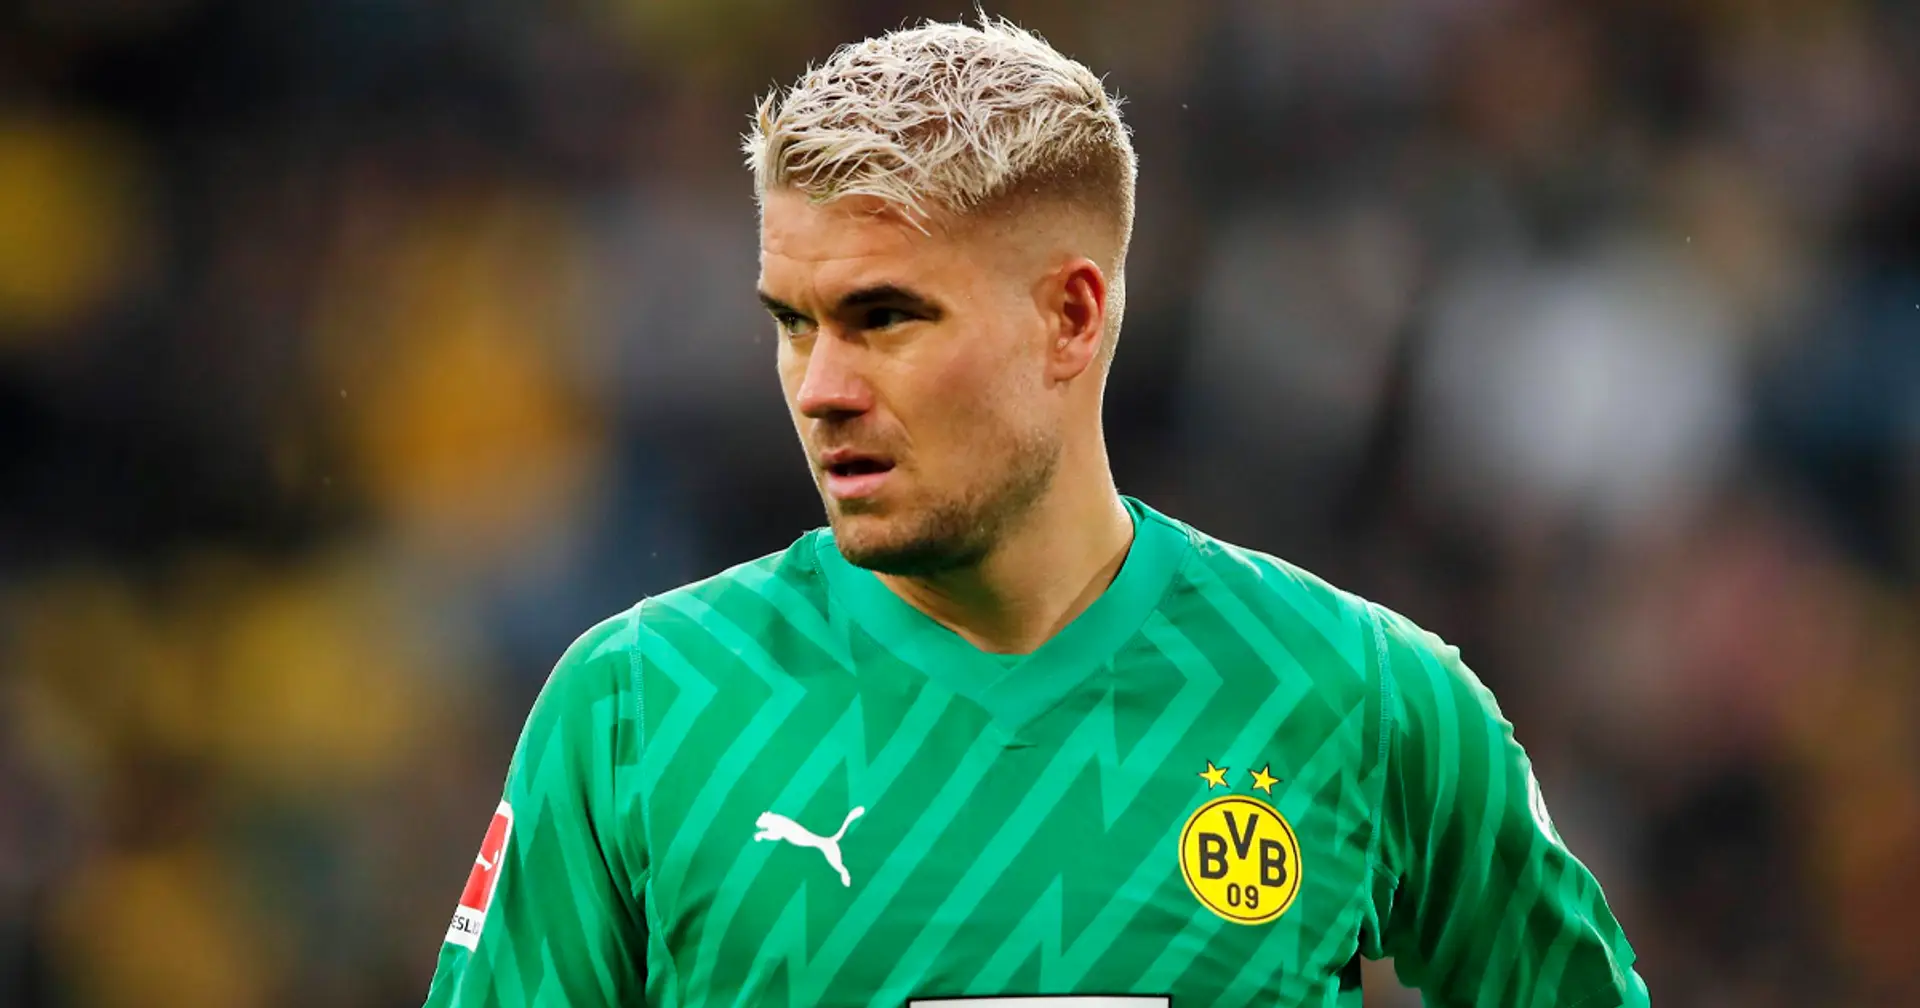 "Wir sind Borussia Dortmund, wir haben die Qualität": Meyer glaubt, dass Saisonziele erreichbar bleiben